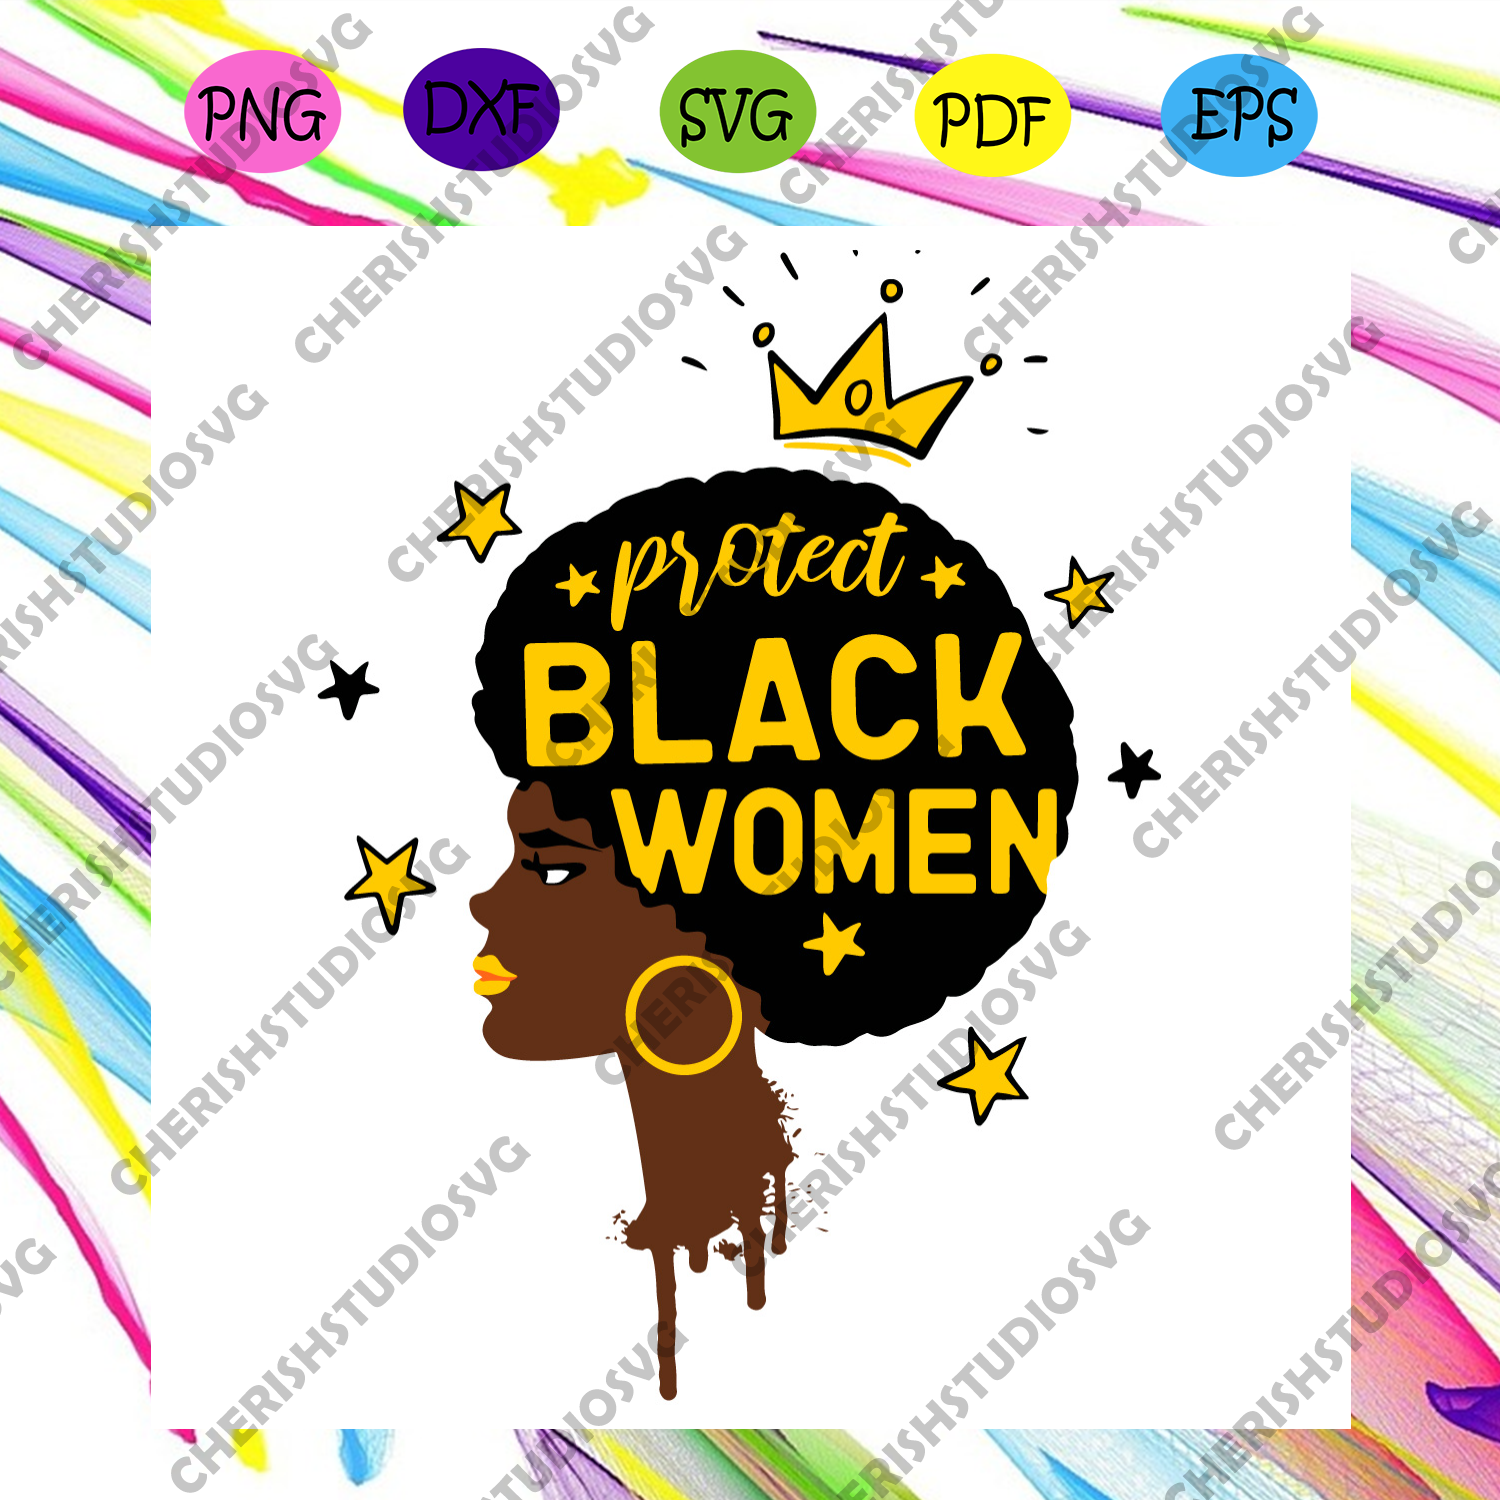 Download Protect Black Women Svg Black Girl Svg Protect Svgm Black Women Svg Cherishsvgstudio